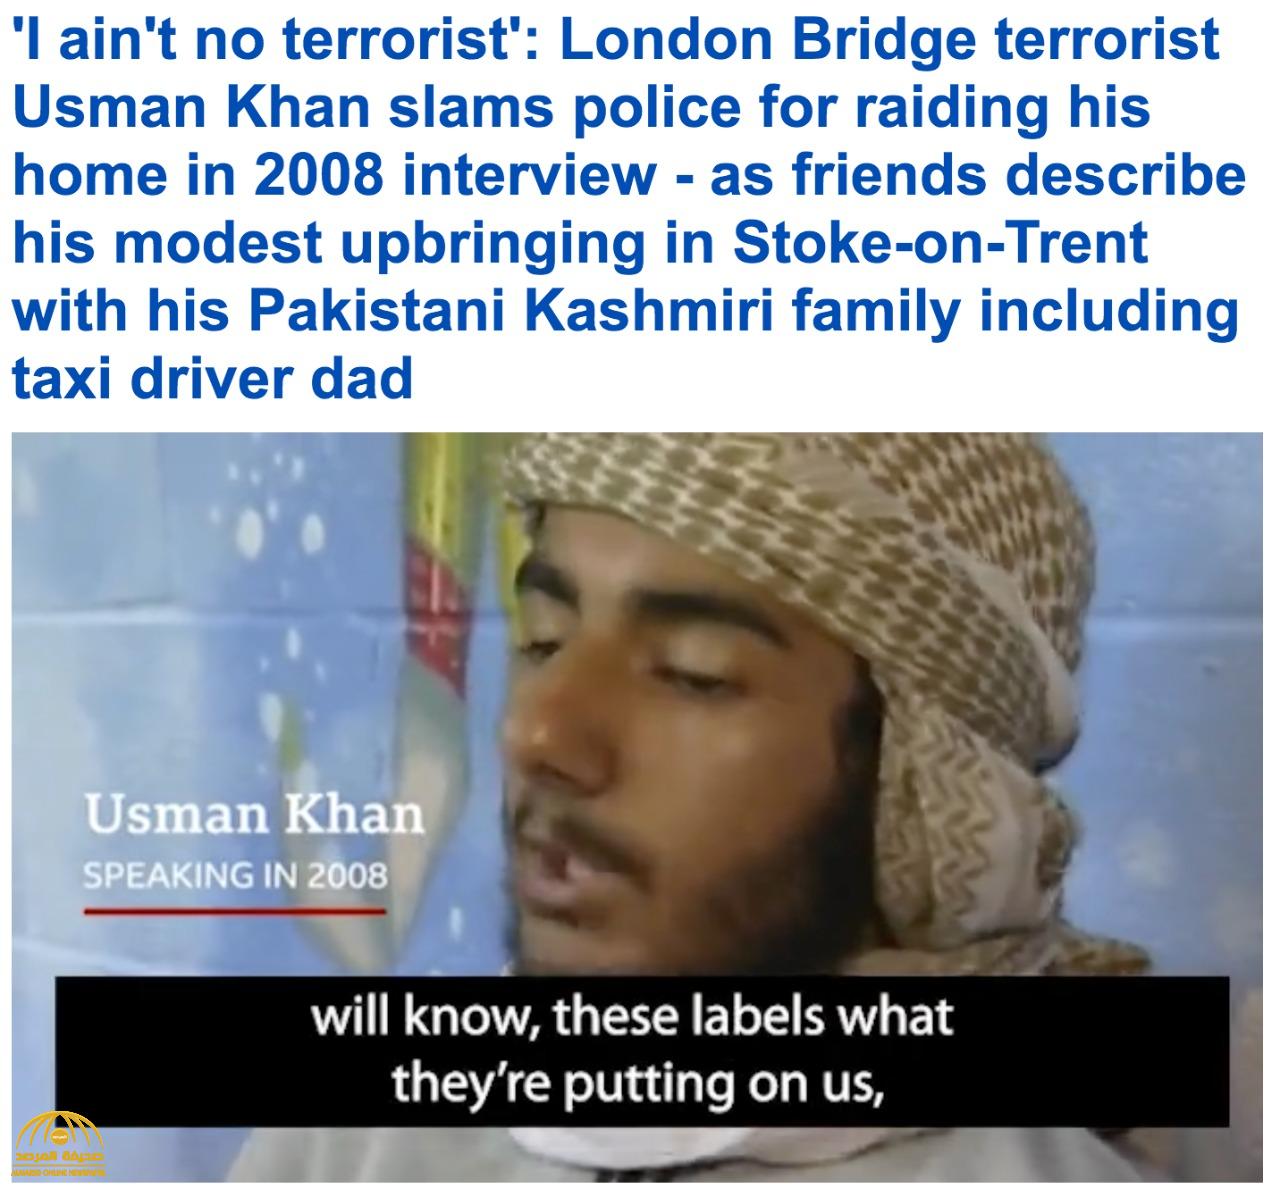 شاهد: فيديو قديم للإرهابي منفذ عملية الطعن على جسر لندن وهو في عمر الـ15 عامًا مدافعًا عن نفسه: "أنا لست إرهابيًا"!